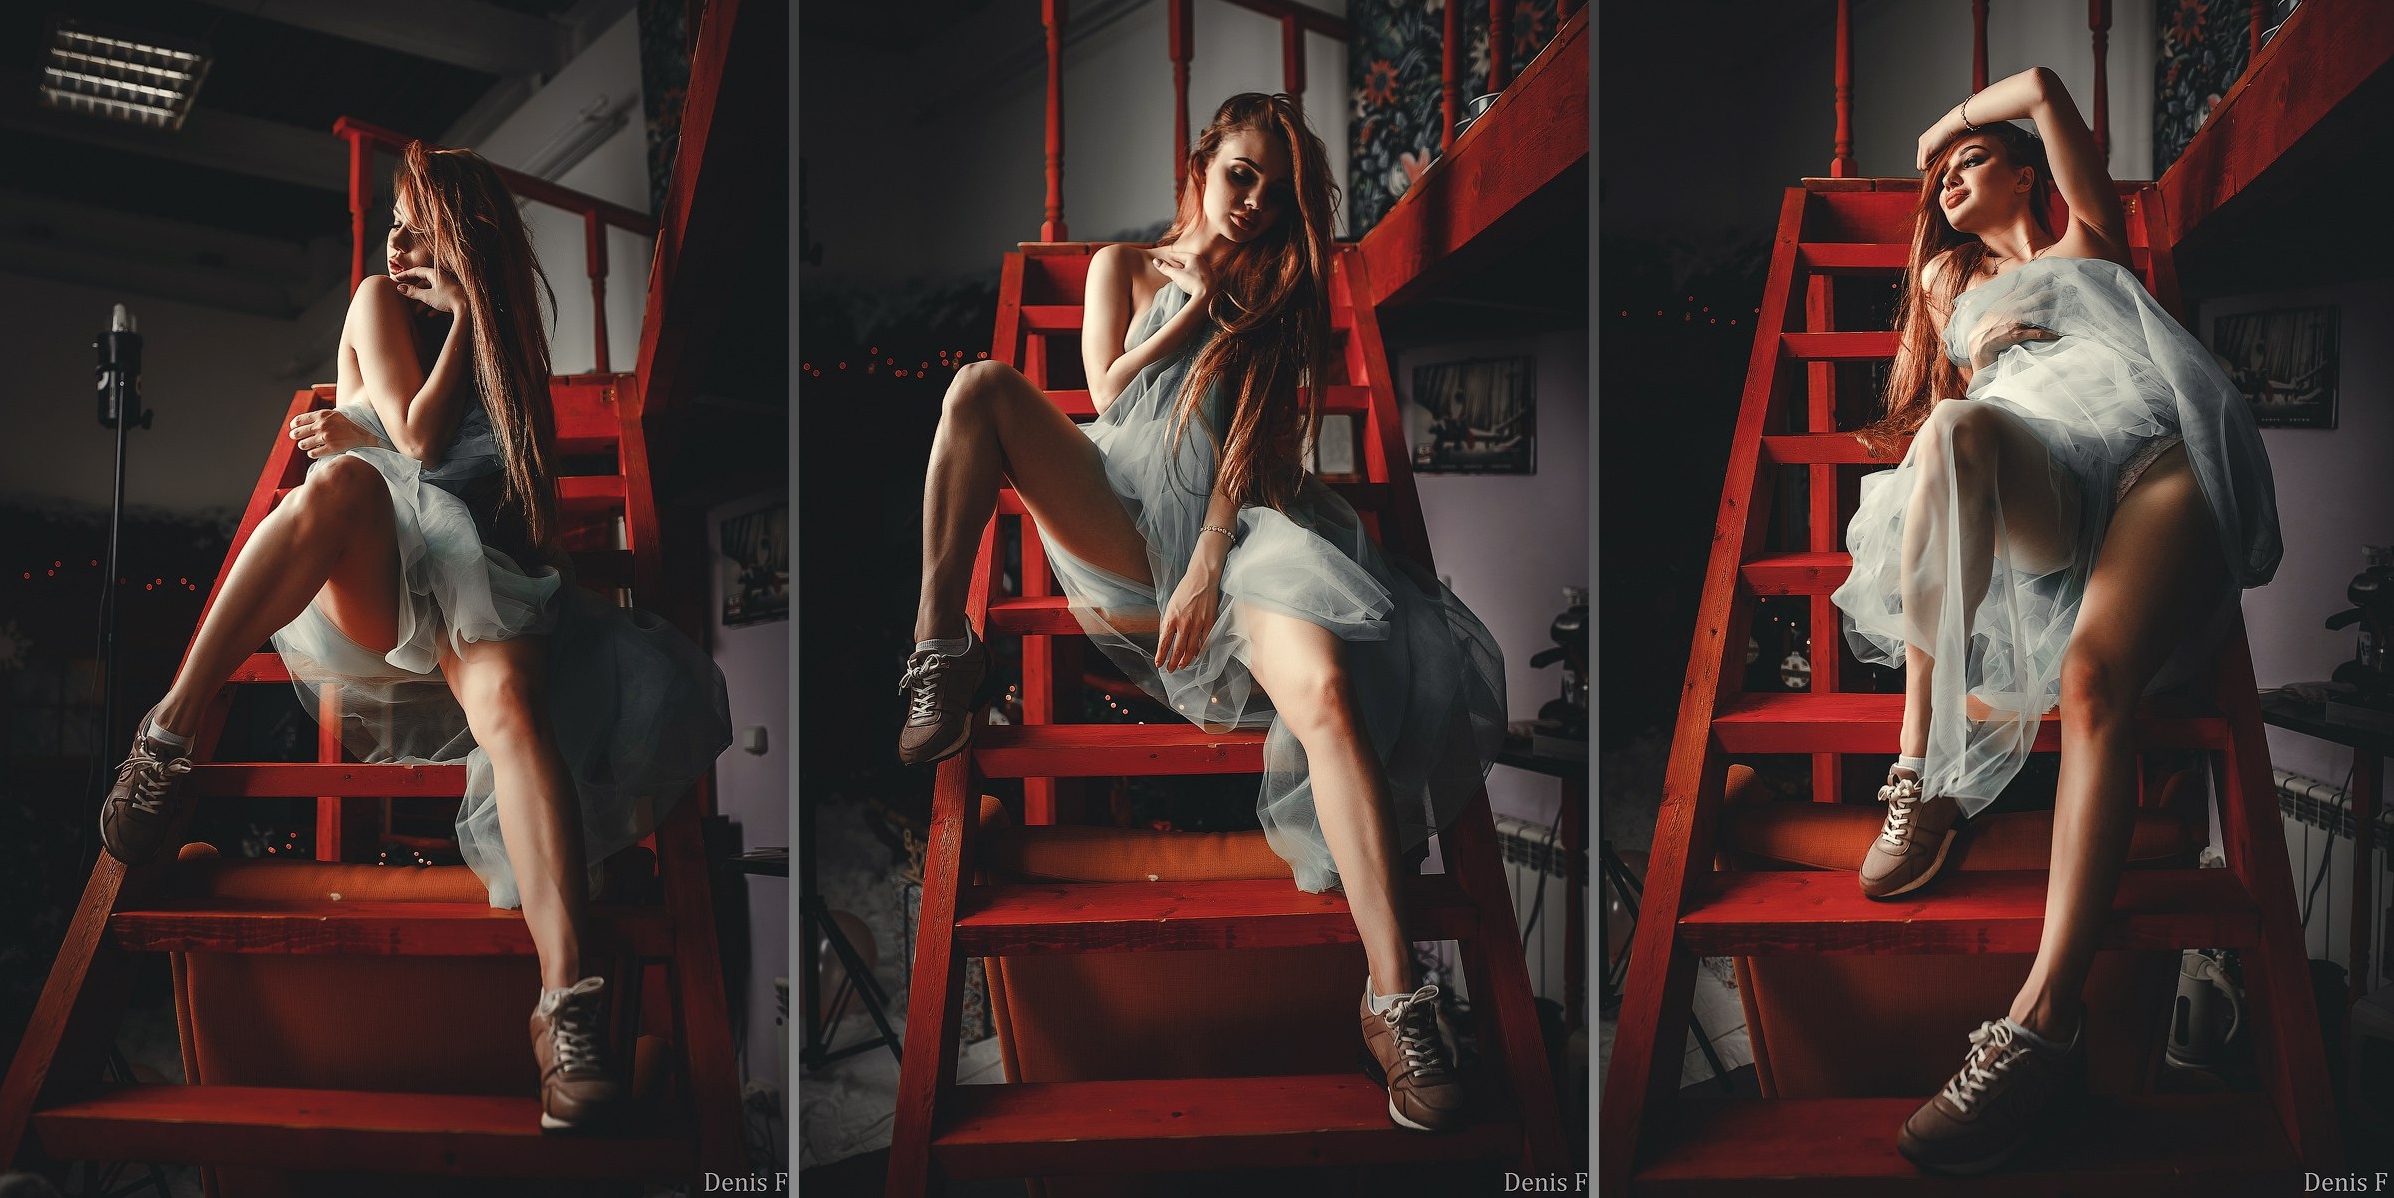 People 2394x1198 collage dark women model Denis Fustachenko stairs red legs